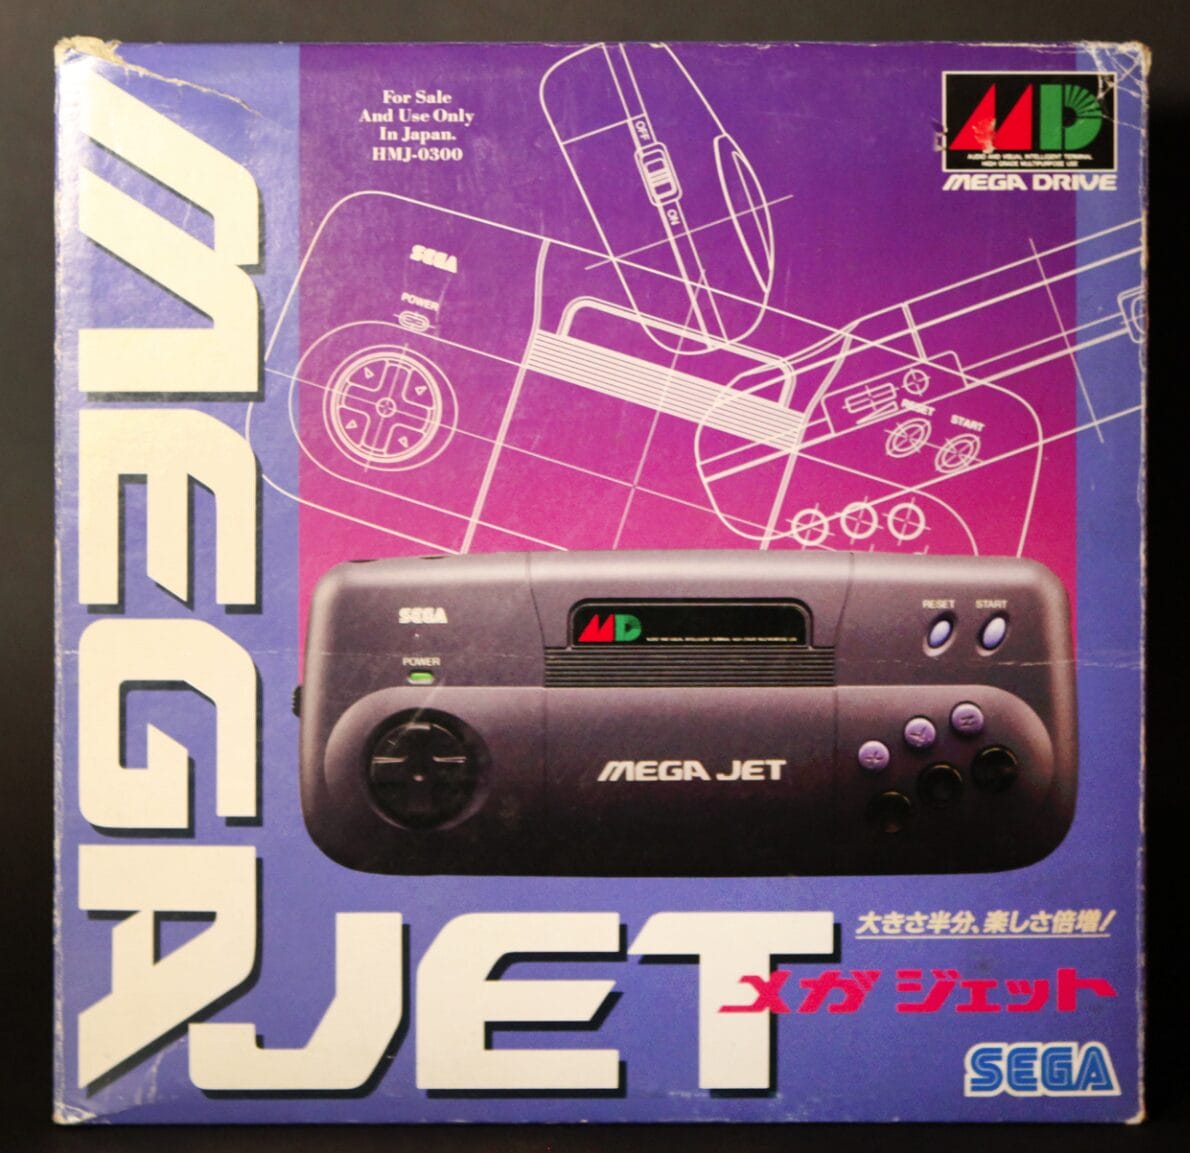 The Sega Mega Jet: Gaming in the Sky